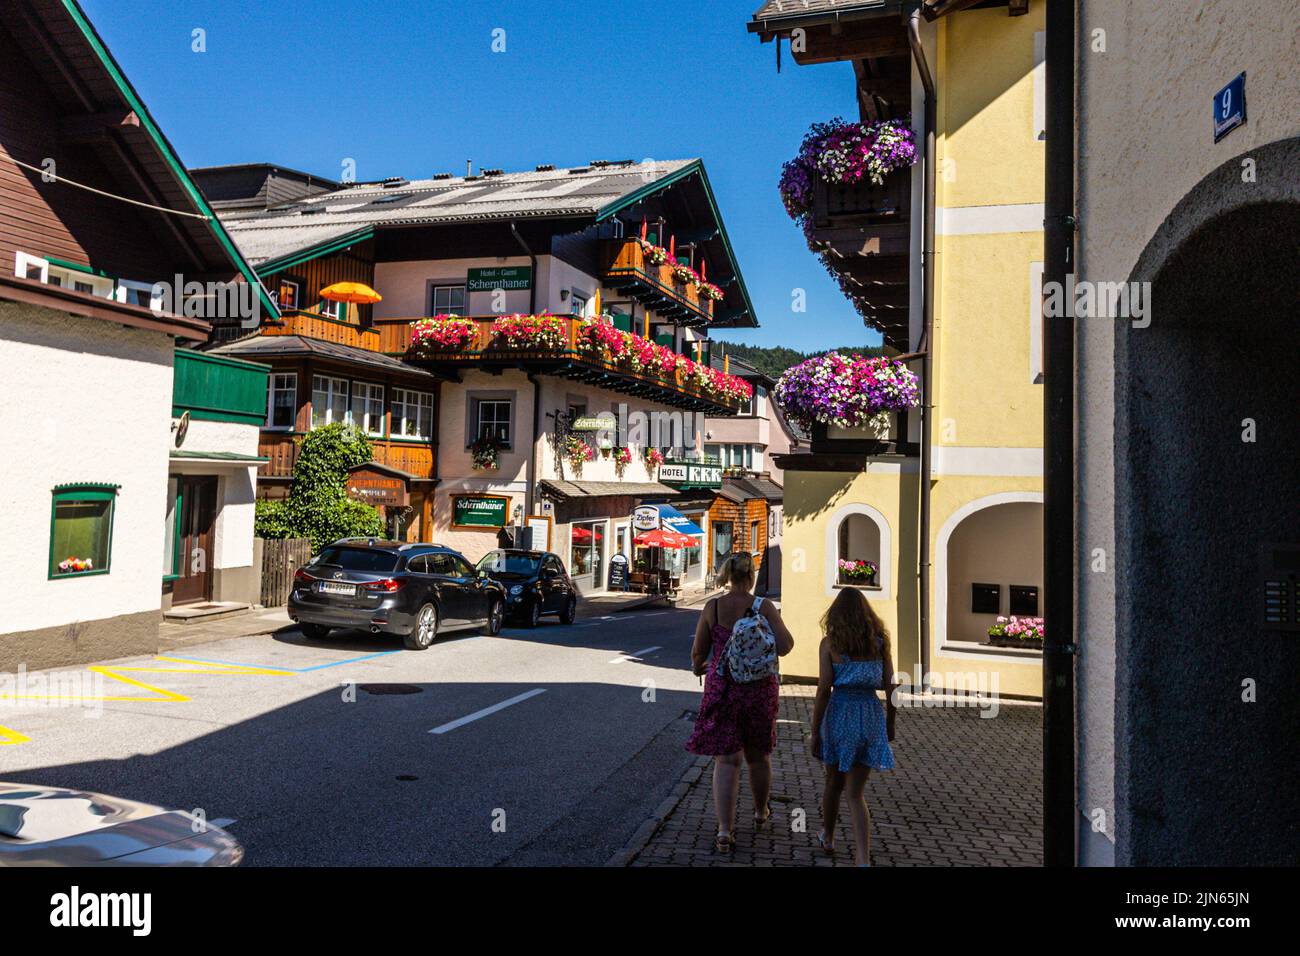 St Gilgen est un village de Wolfgangsee, dans l'État autrichien de Salzbourg, dans la région de Salzkammergut. Autriche. Banque D'Images